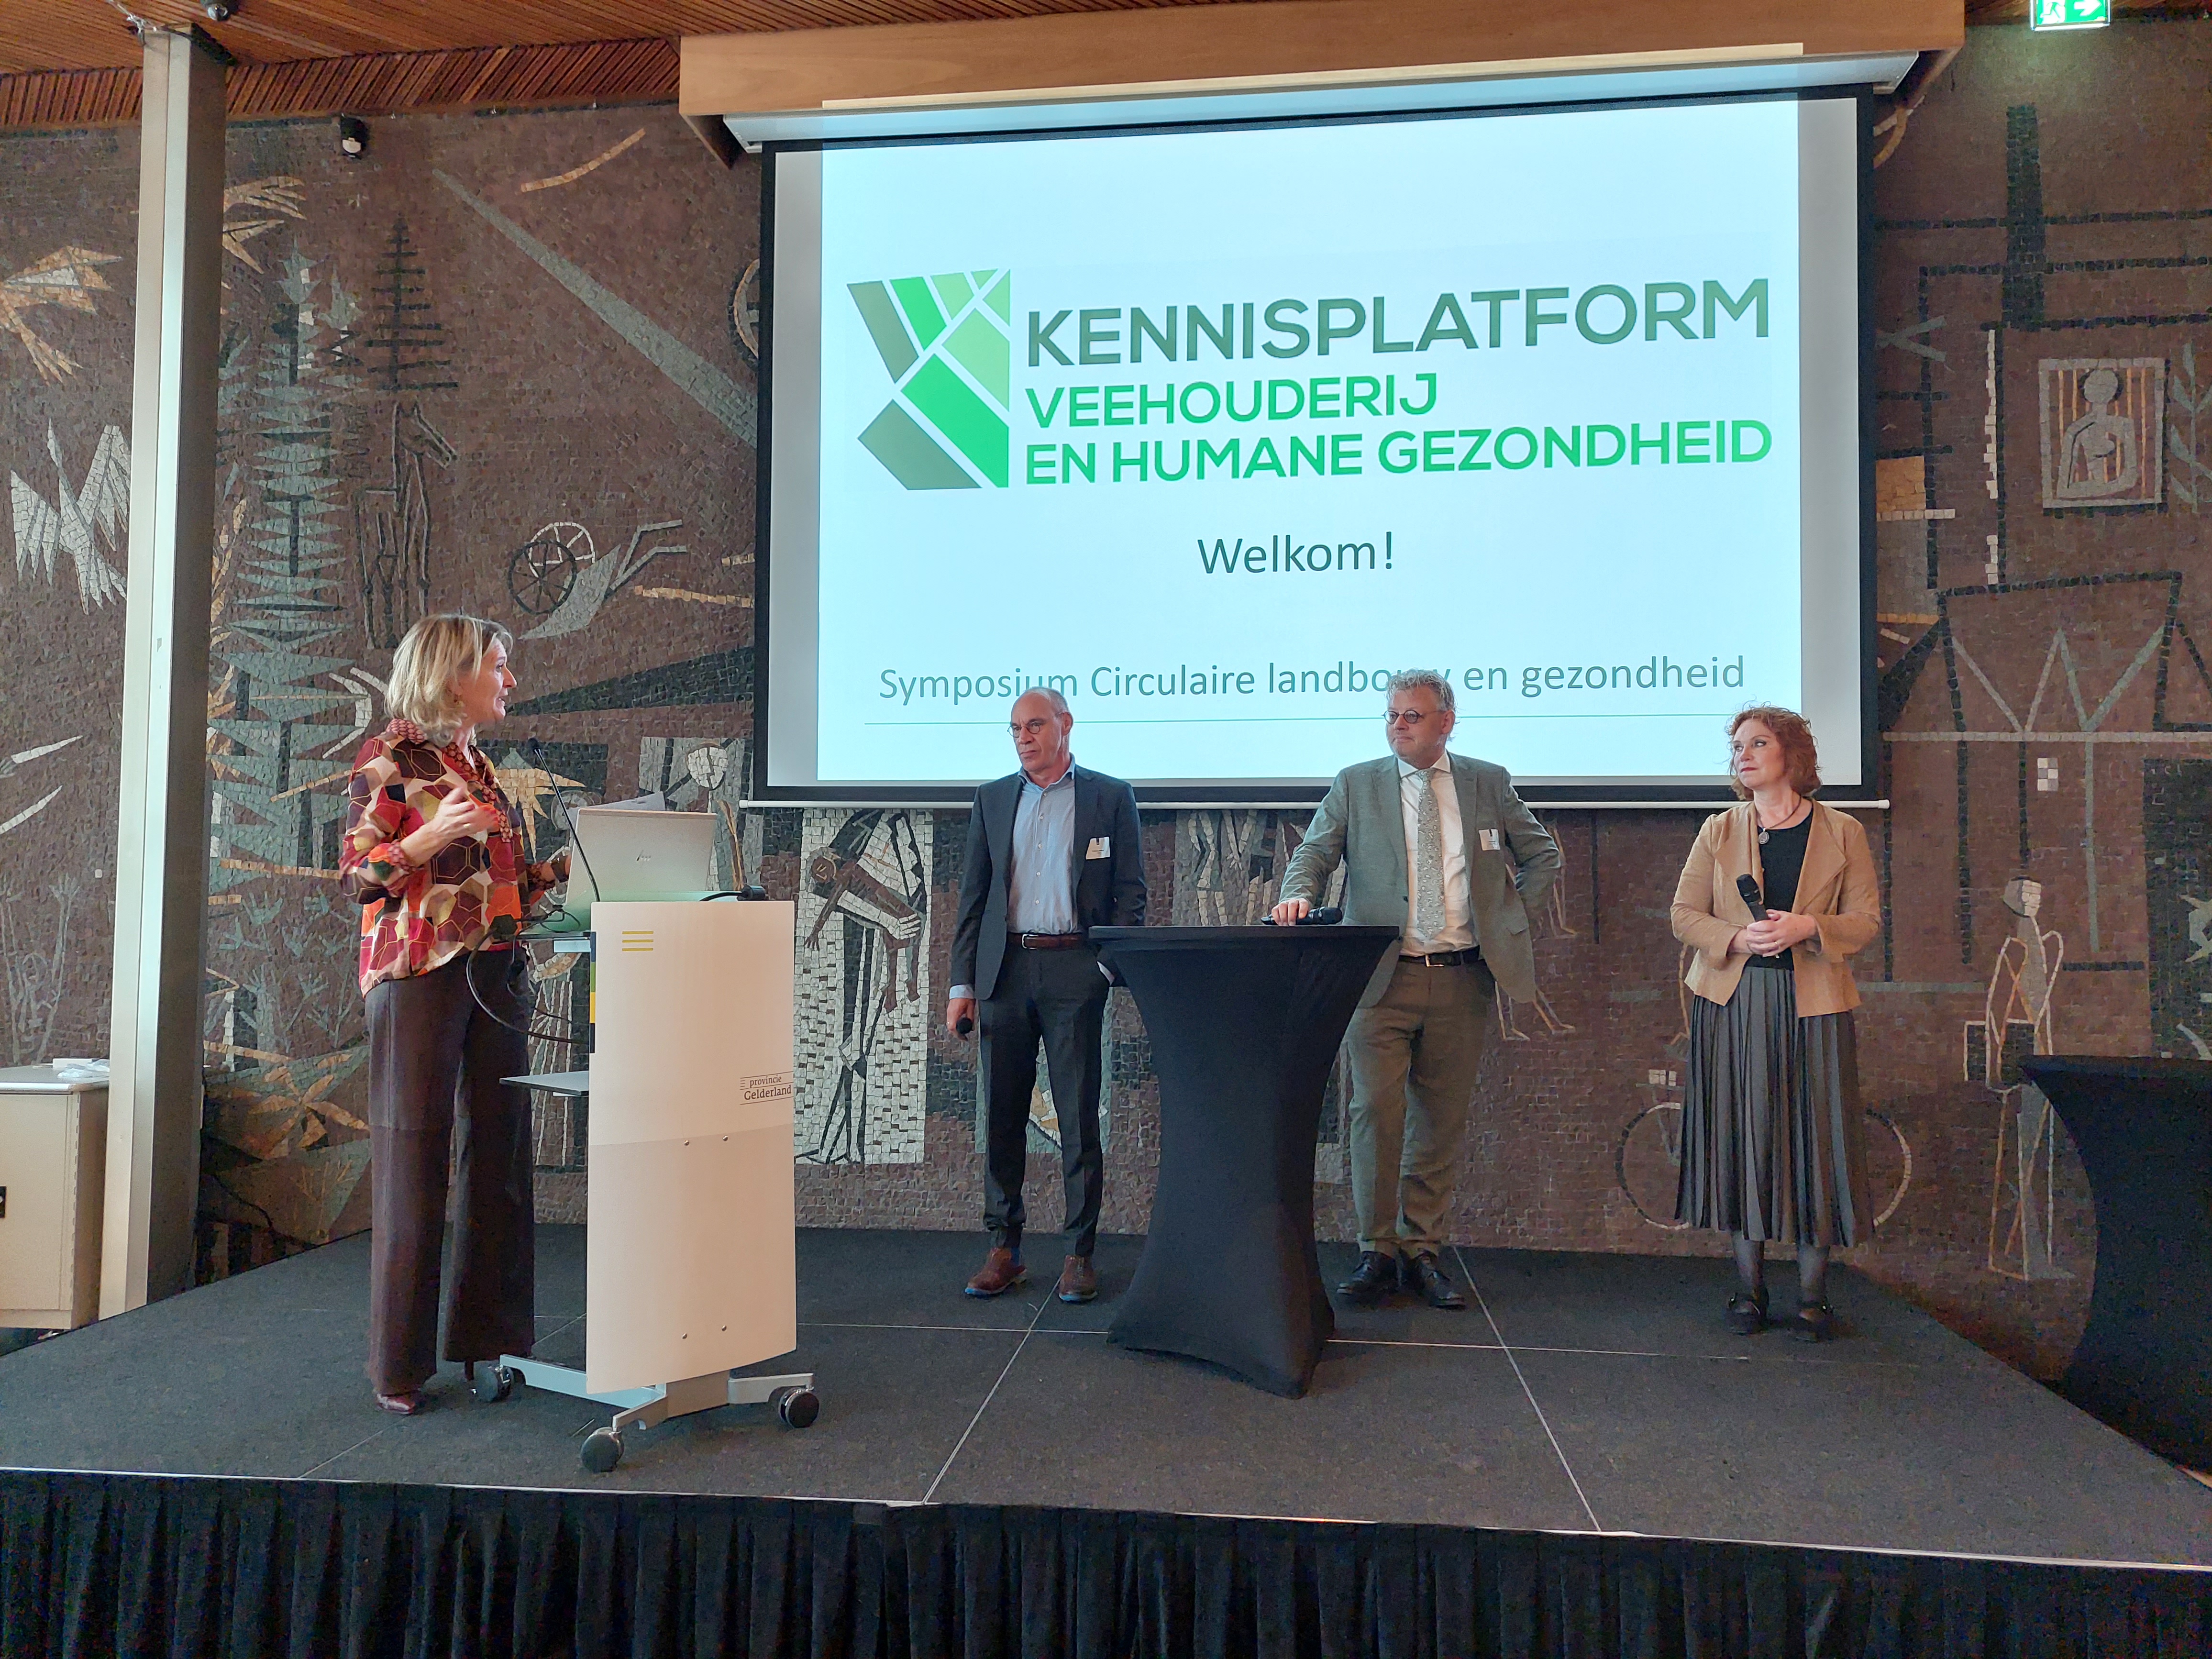 Dagvoorzitter Simone van Trier met Annemarie Moons (voorzitter Kennisplatform), Peter Drenth (provincie Gelderland) en Bastiaan Pellikaan (AERES) in gesprek